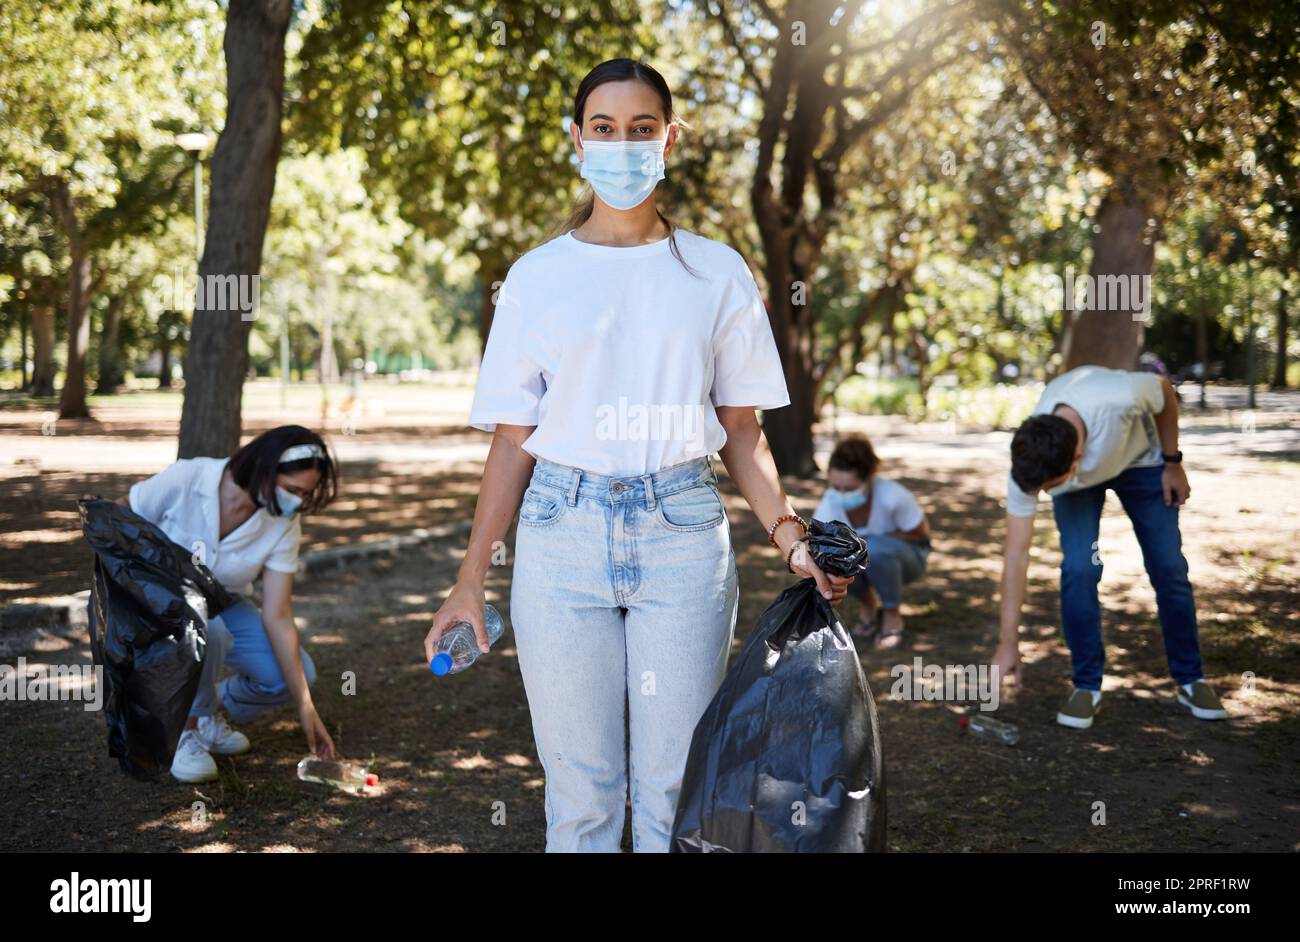 COVID, maschera facciale e parco di pulizia dei lavoratori volontari, che prestano servizio alla comunità e aiutano a raccogliere rifiuti e bottiglie di plastica. Sostenere il team di attivisti che riciclano, lavorando insieme per porre fine all'inquinamento Foto Stock